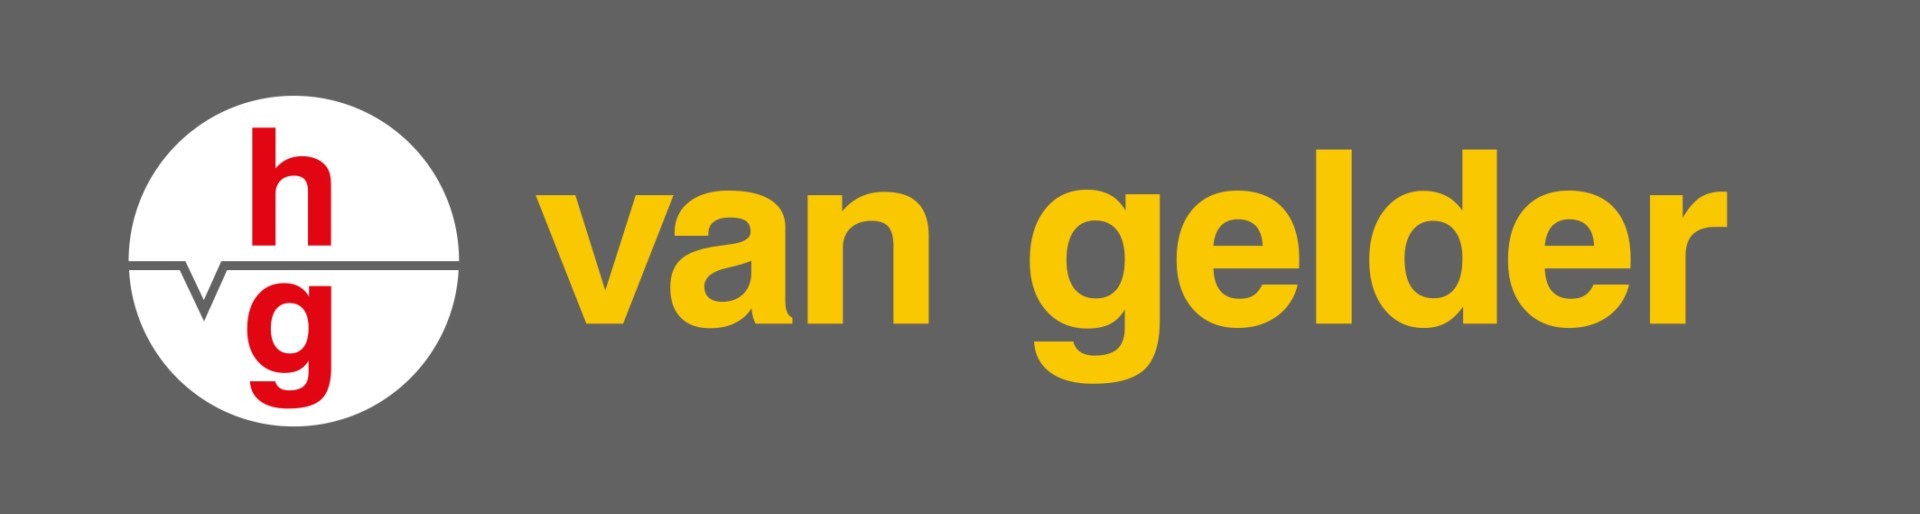 2015_VG_logo_RGB